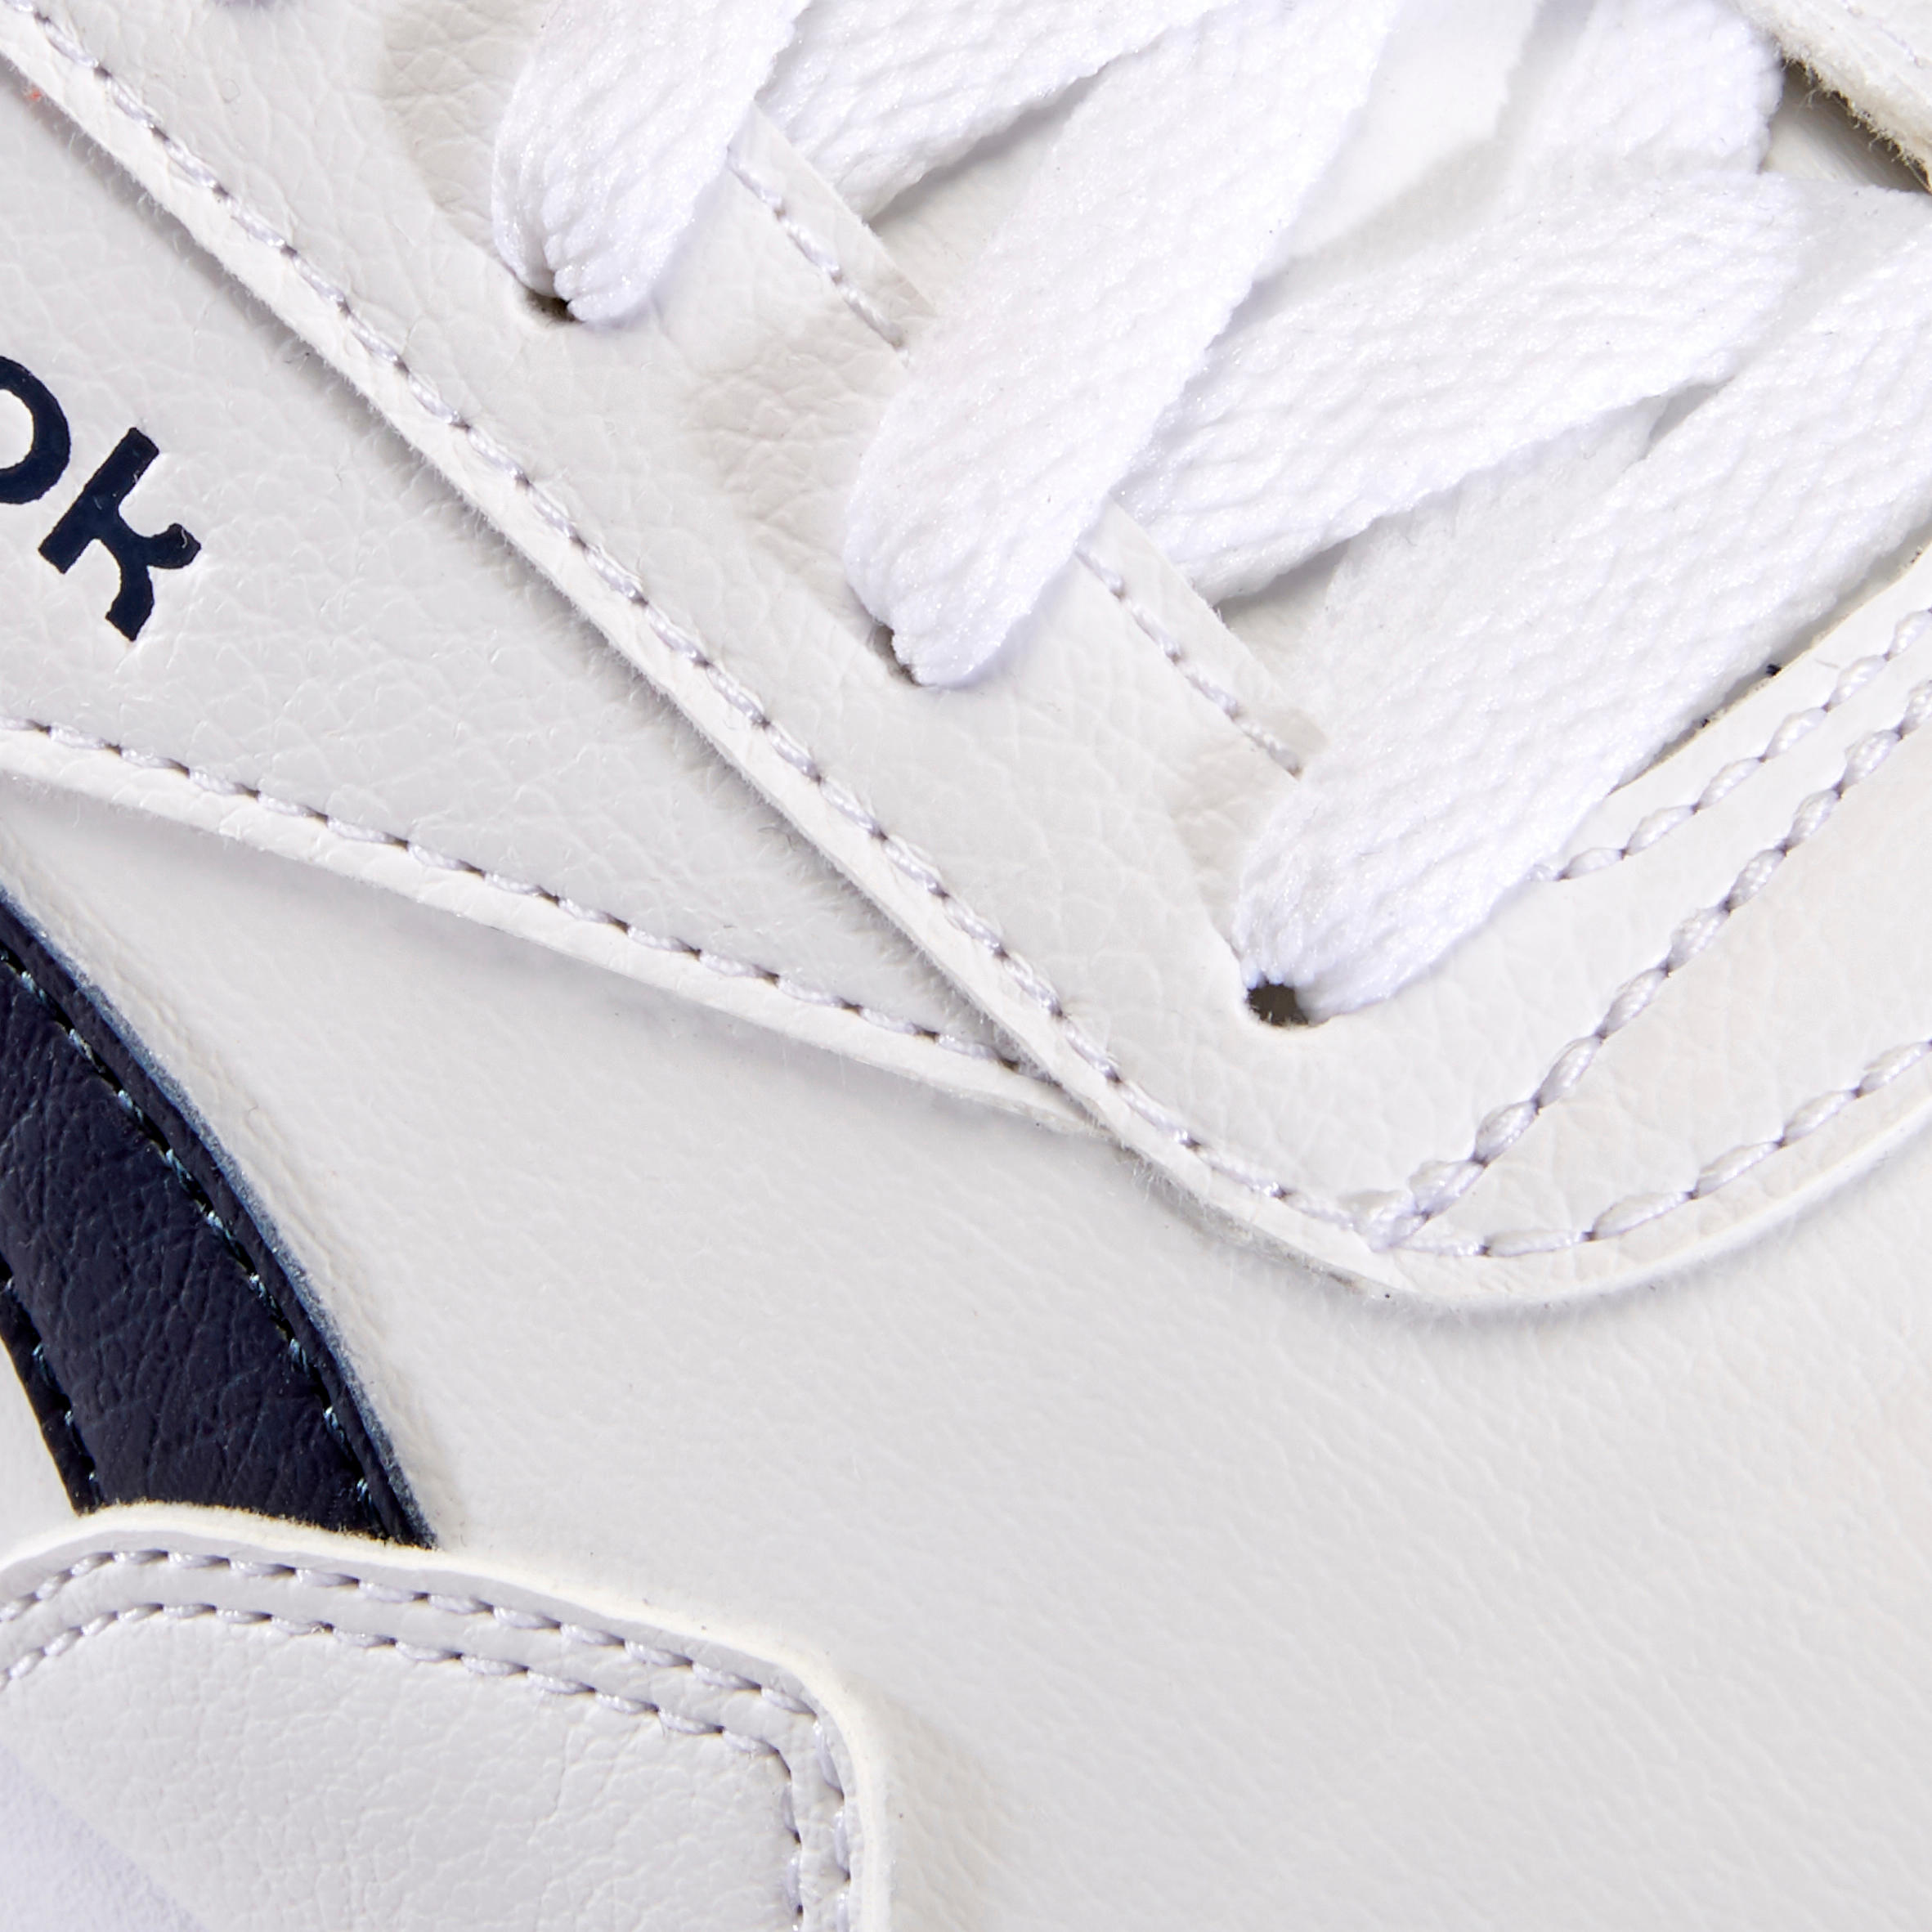 Men's Urban Walking Shoes Reebok Royal Classic - white 7/8